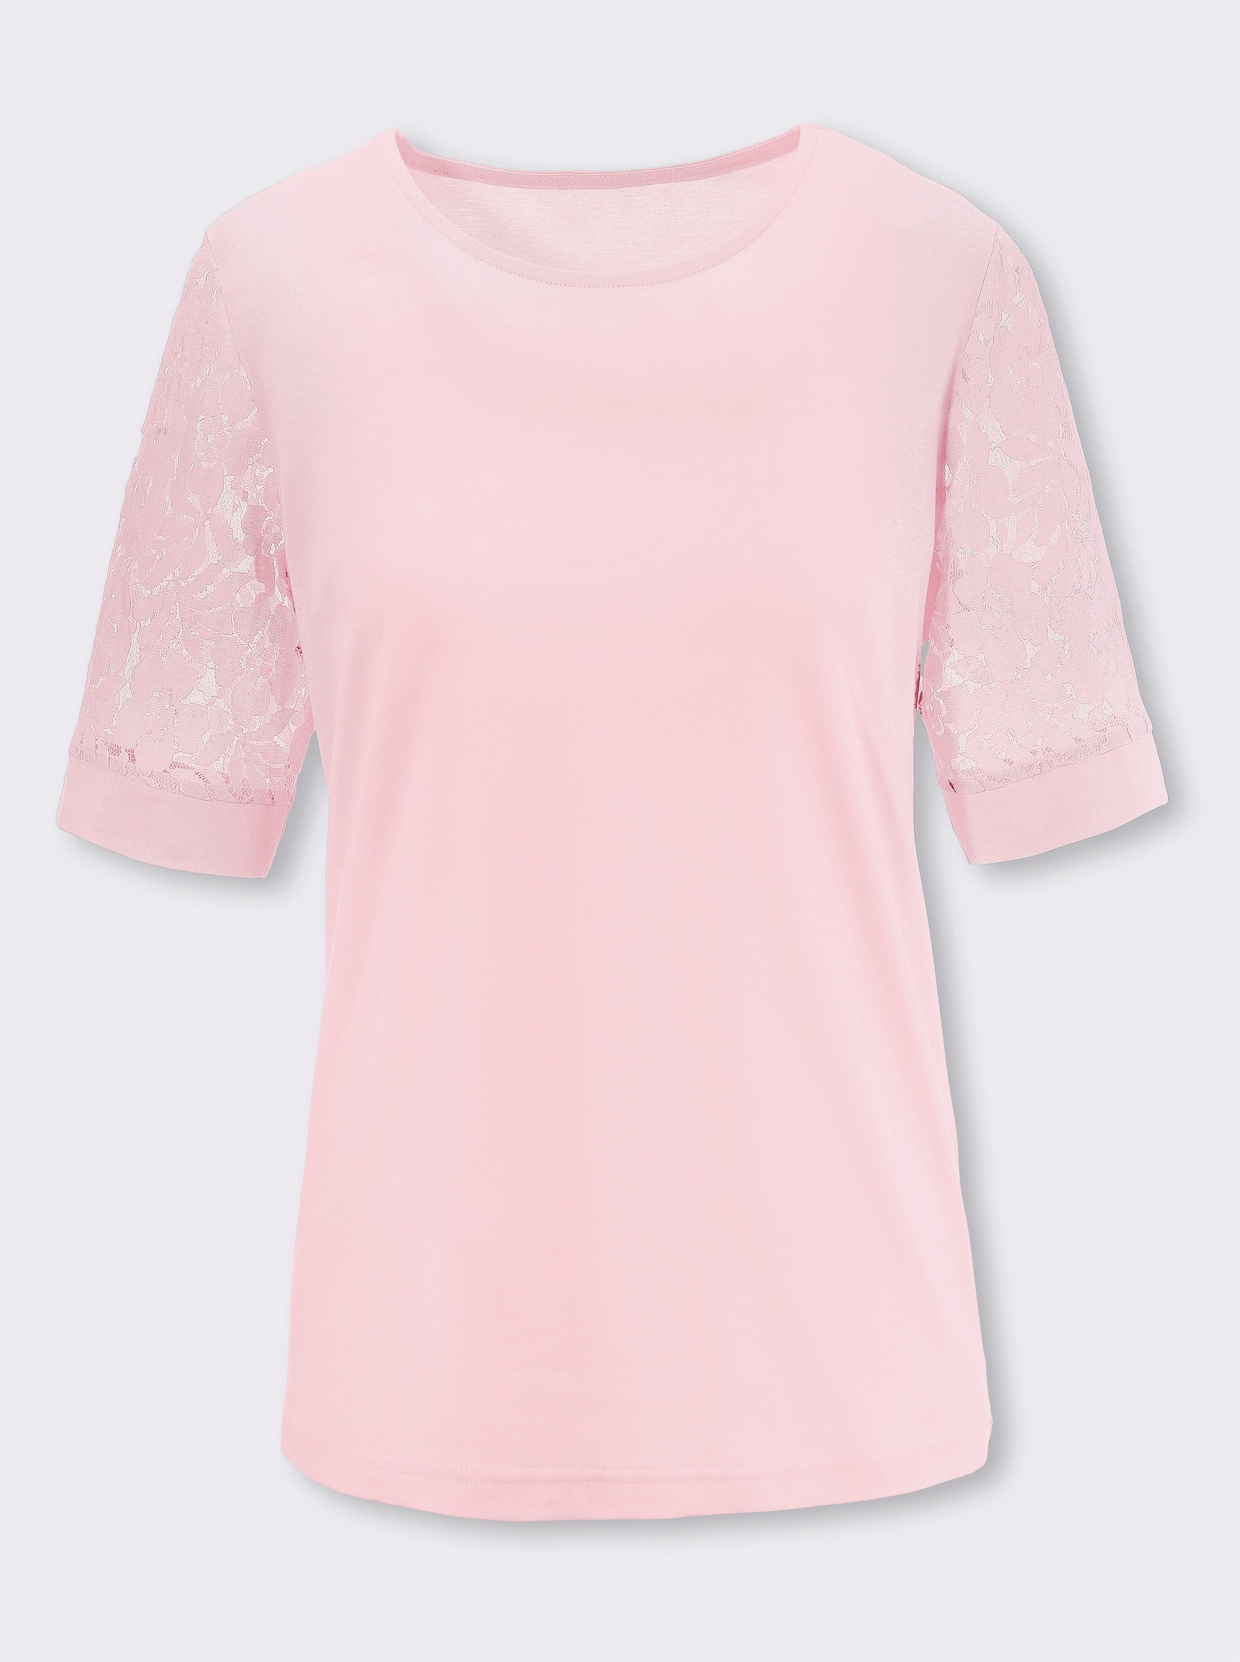 Sada: Tričko+vesta - světle růžová